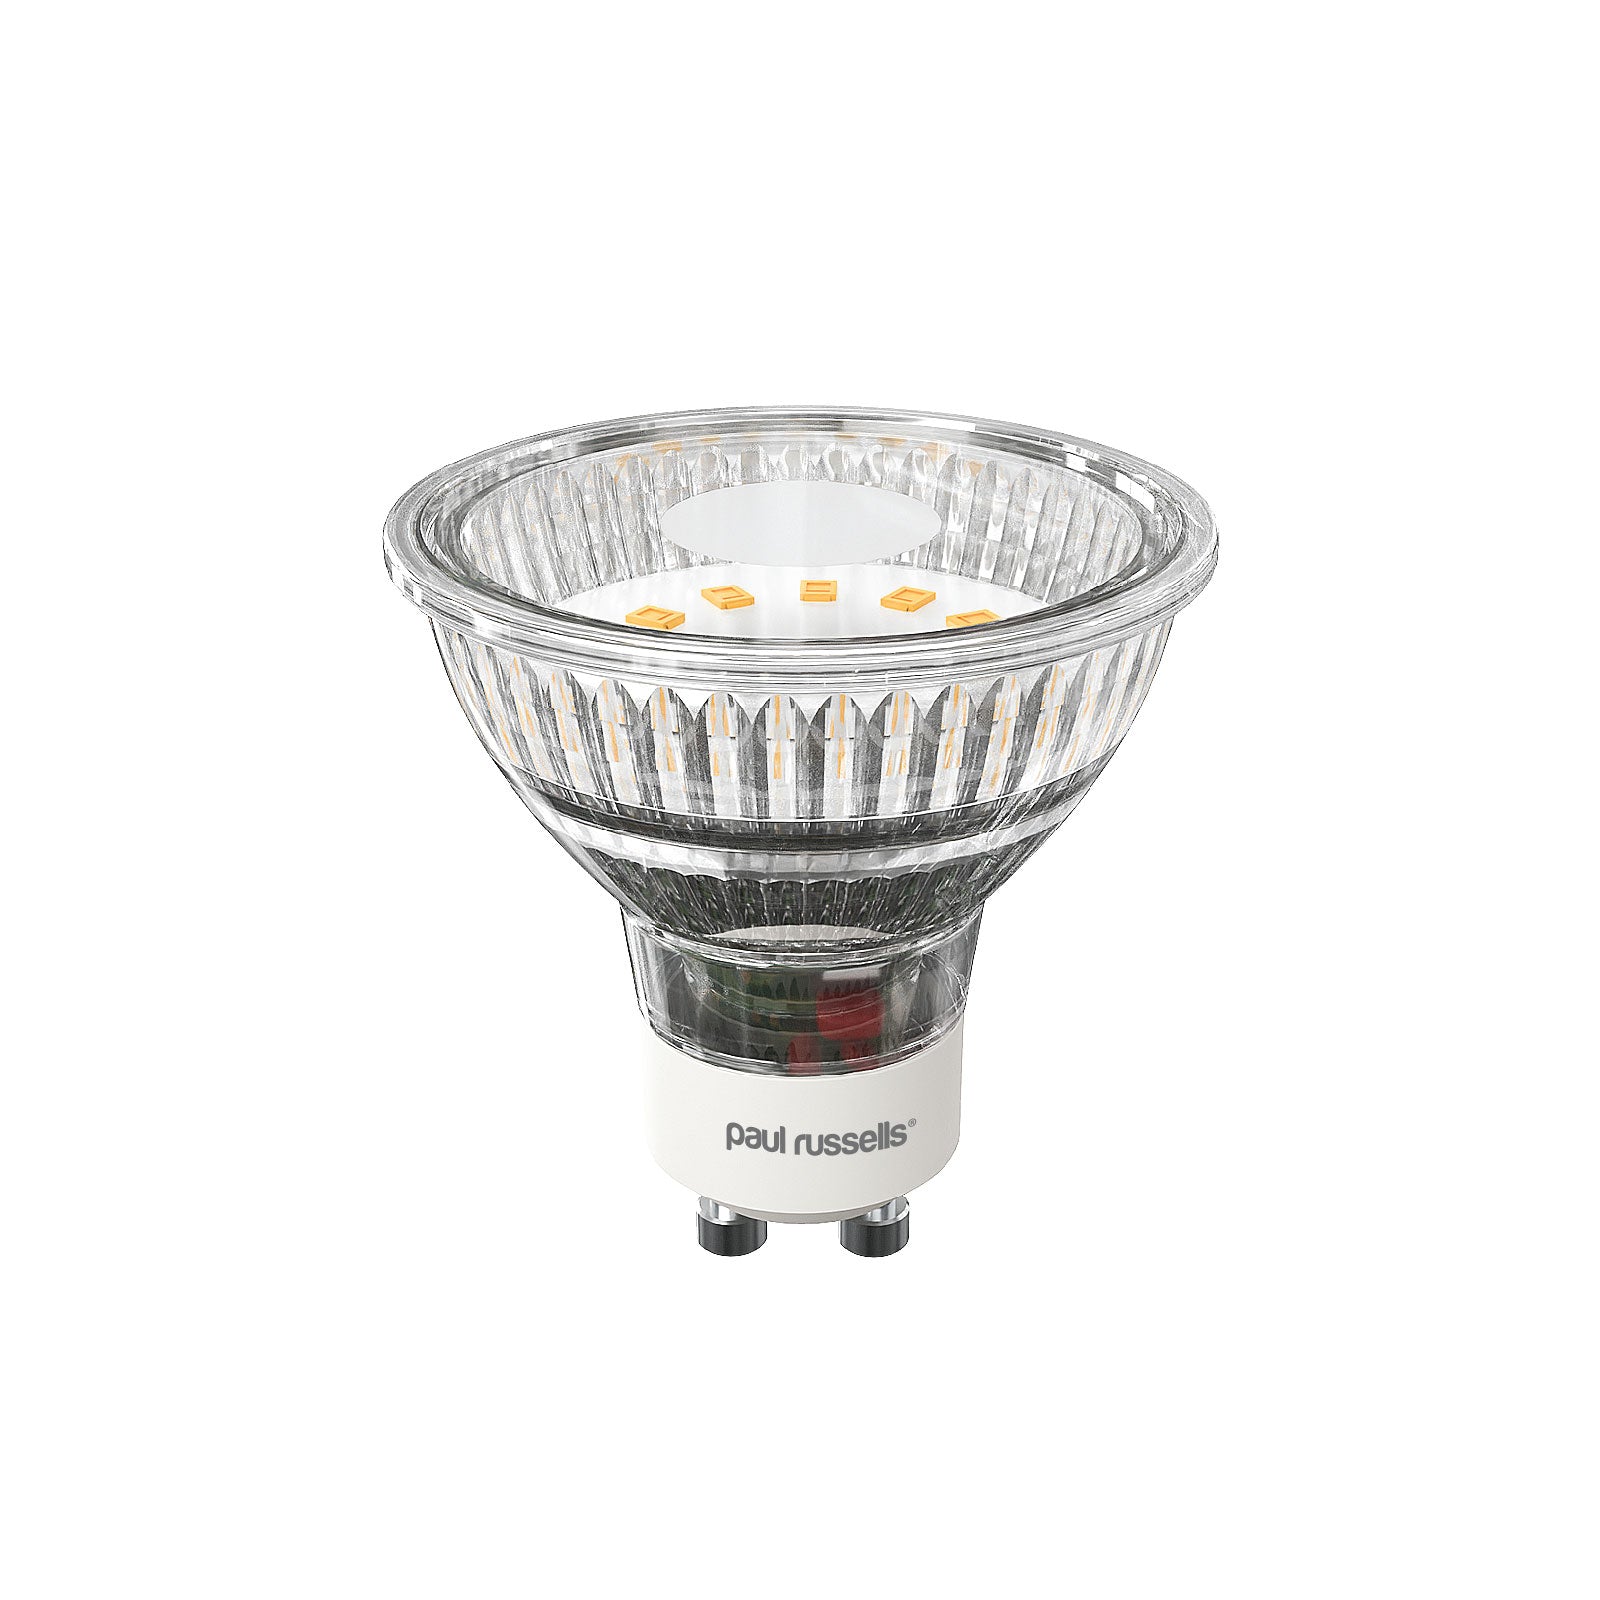 LED Spotlight 4W (35w), GU10, 450 Lumens, Warm White (2700K), 240V